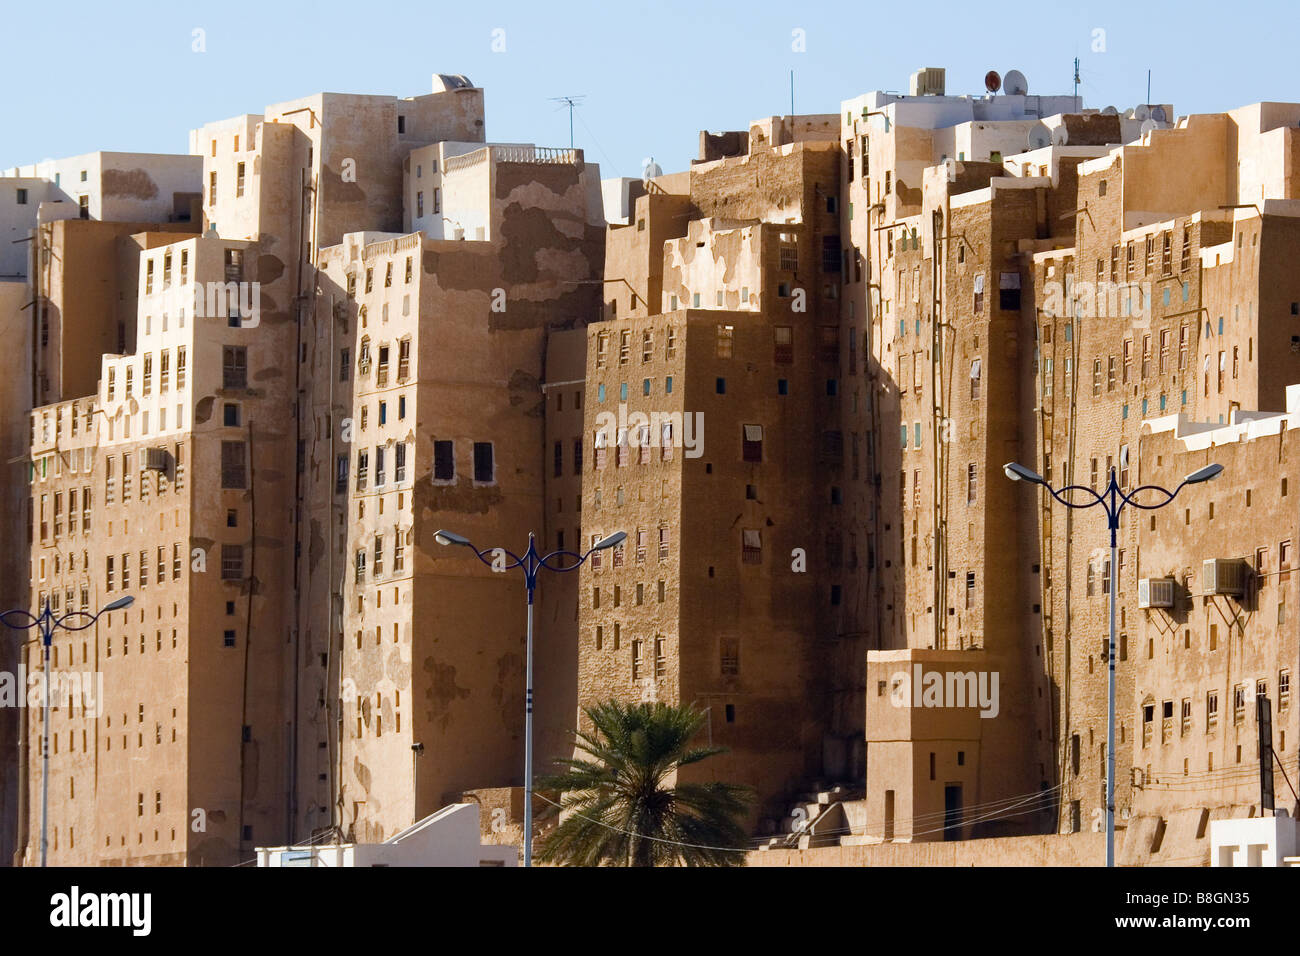 shibam in wadi hadramaut yemen Stock Photo